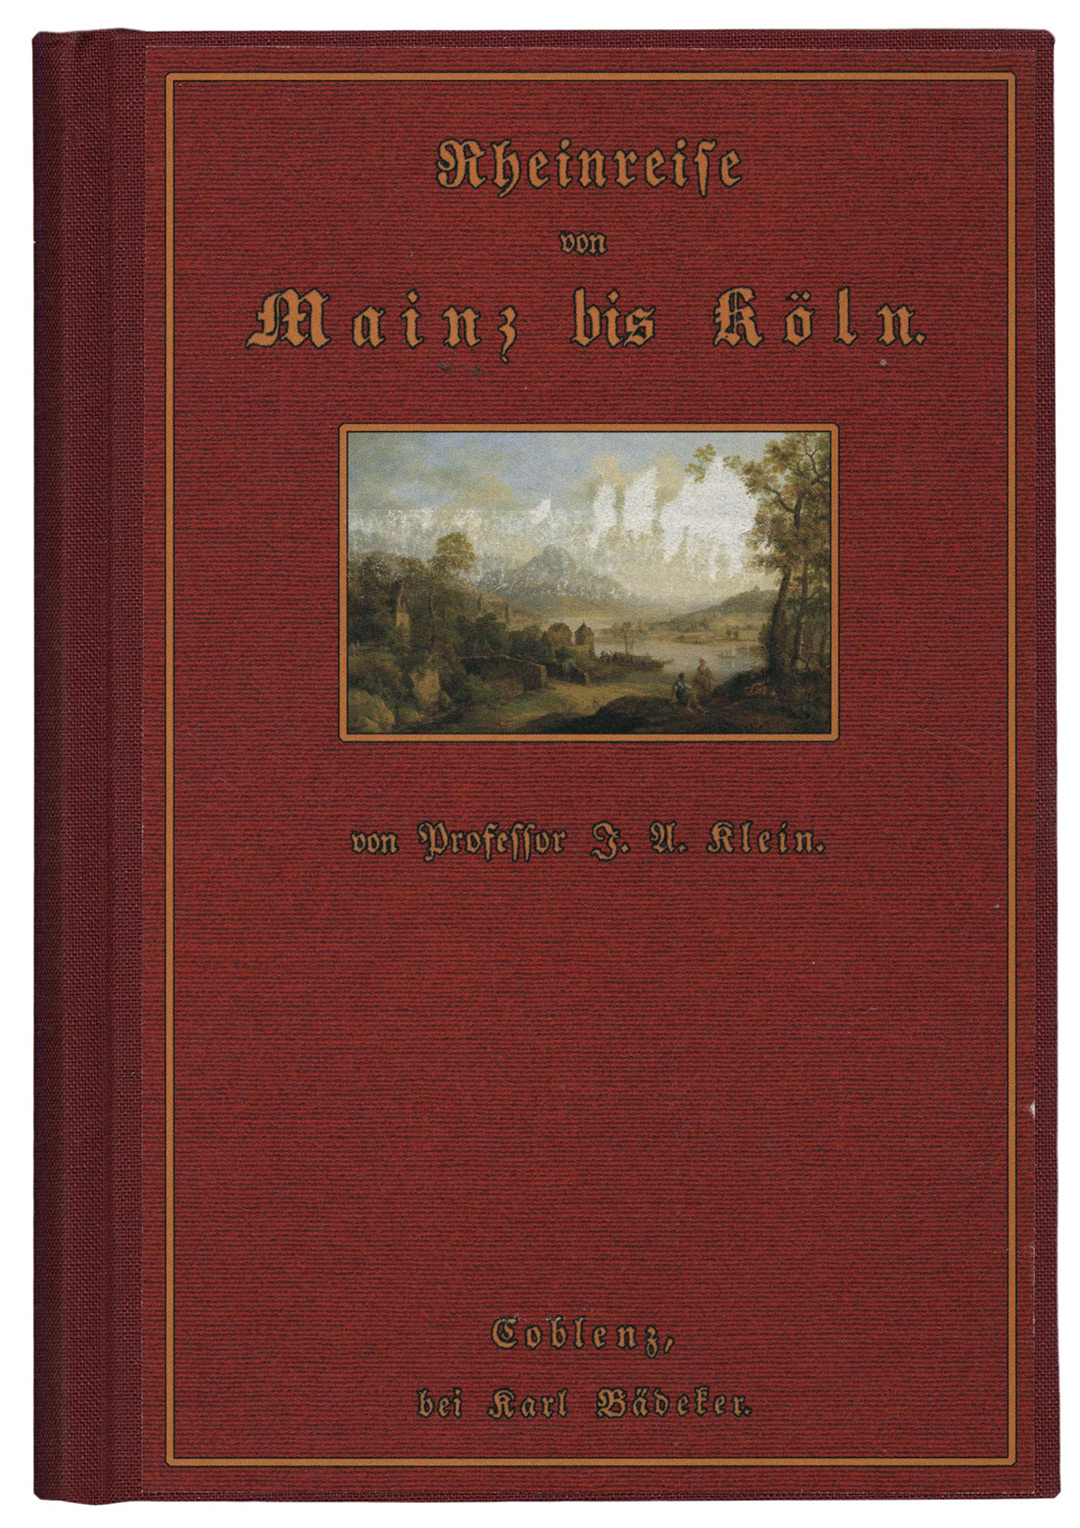 Umschlag der Faksimile-Ausgabe von Rheinreise von Mainz bis Köln von Johann August Klein. Coblenz, bei Karl Bädeker 1827. Faksimile-Reprint: Saarbrücken : Fines Mundi 2018. 